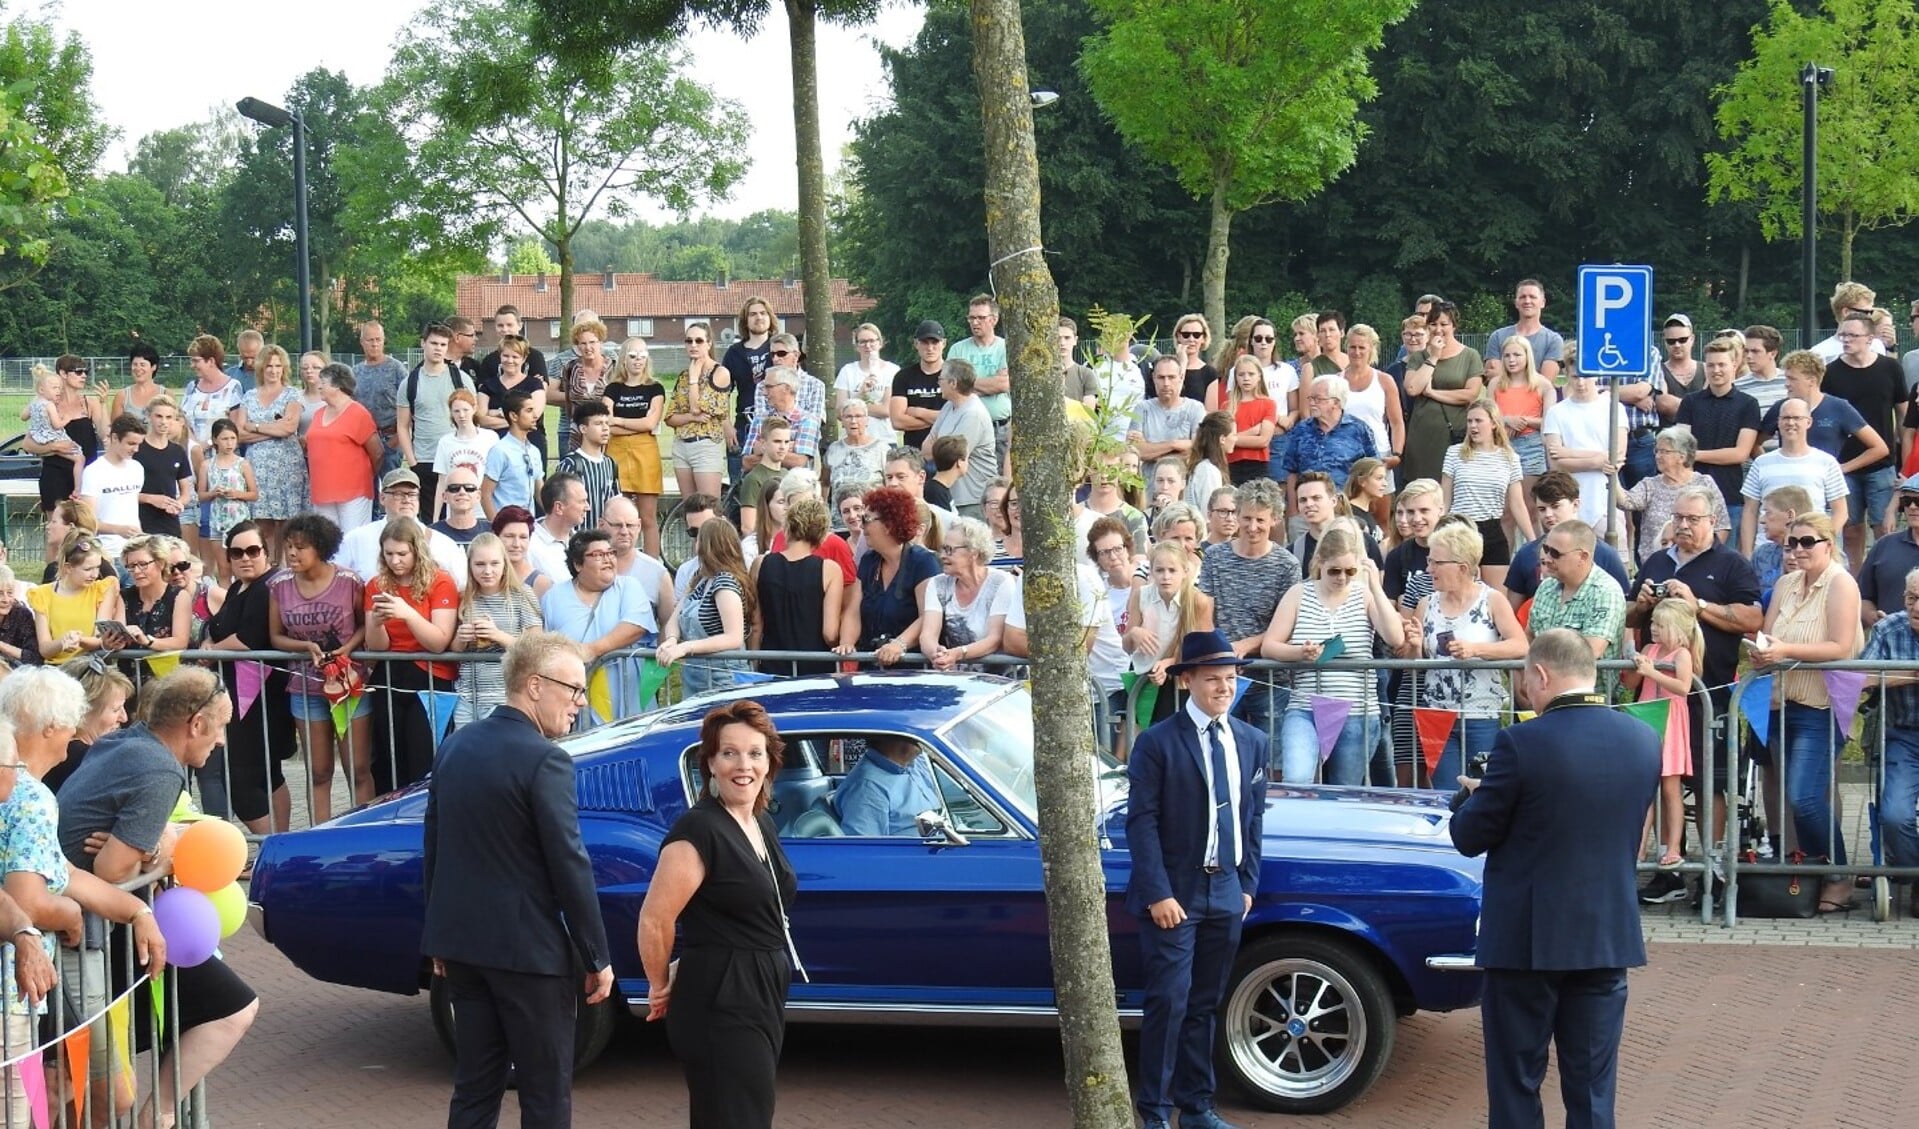 Jeffrey voor de blauwe Ford Mustang. Foto: familie Plekenpol